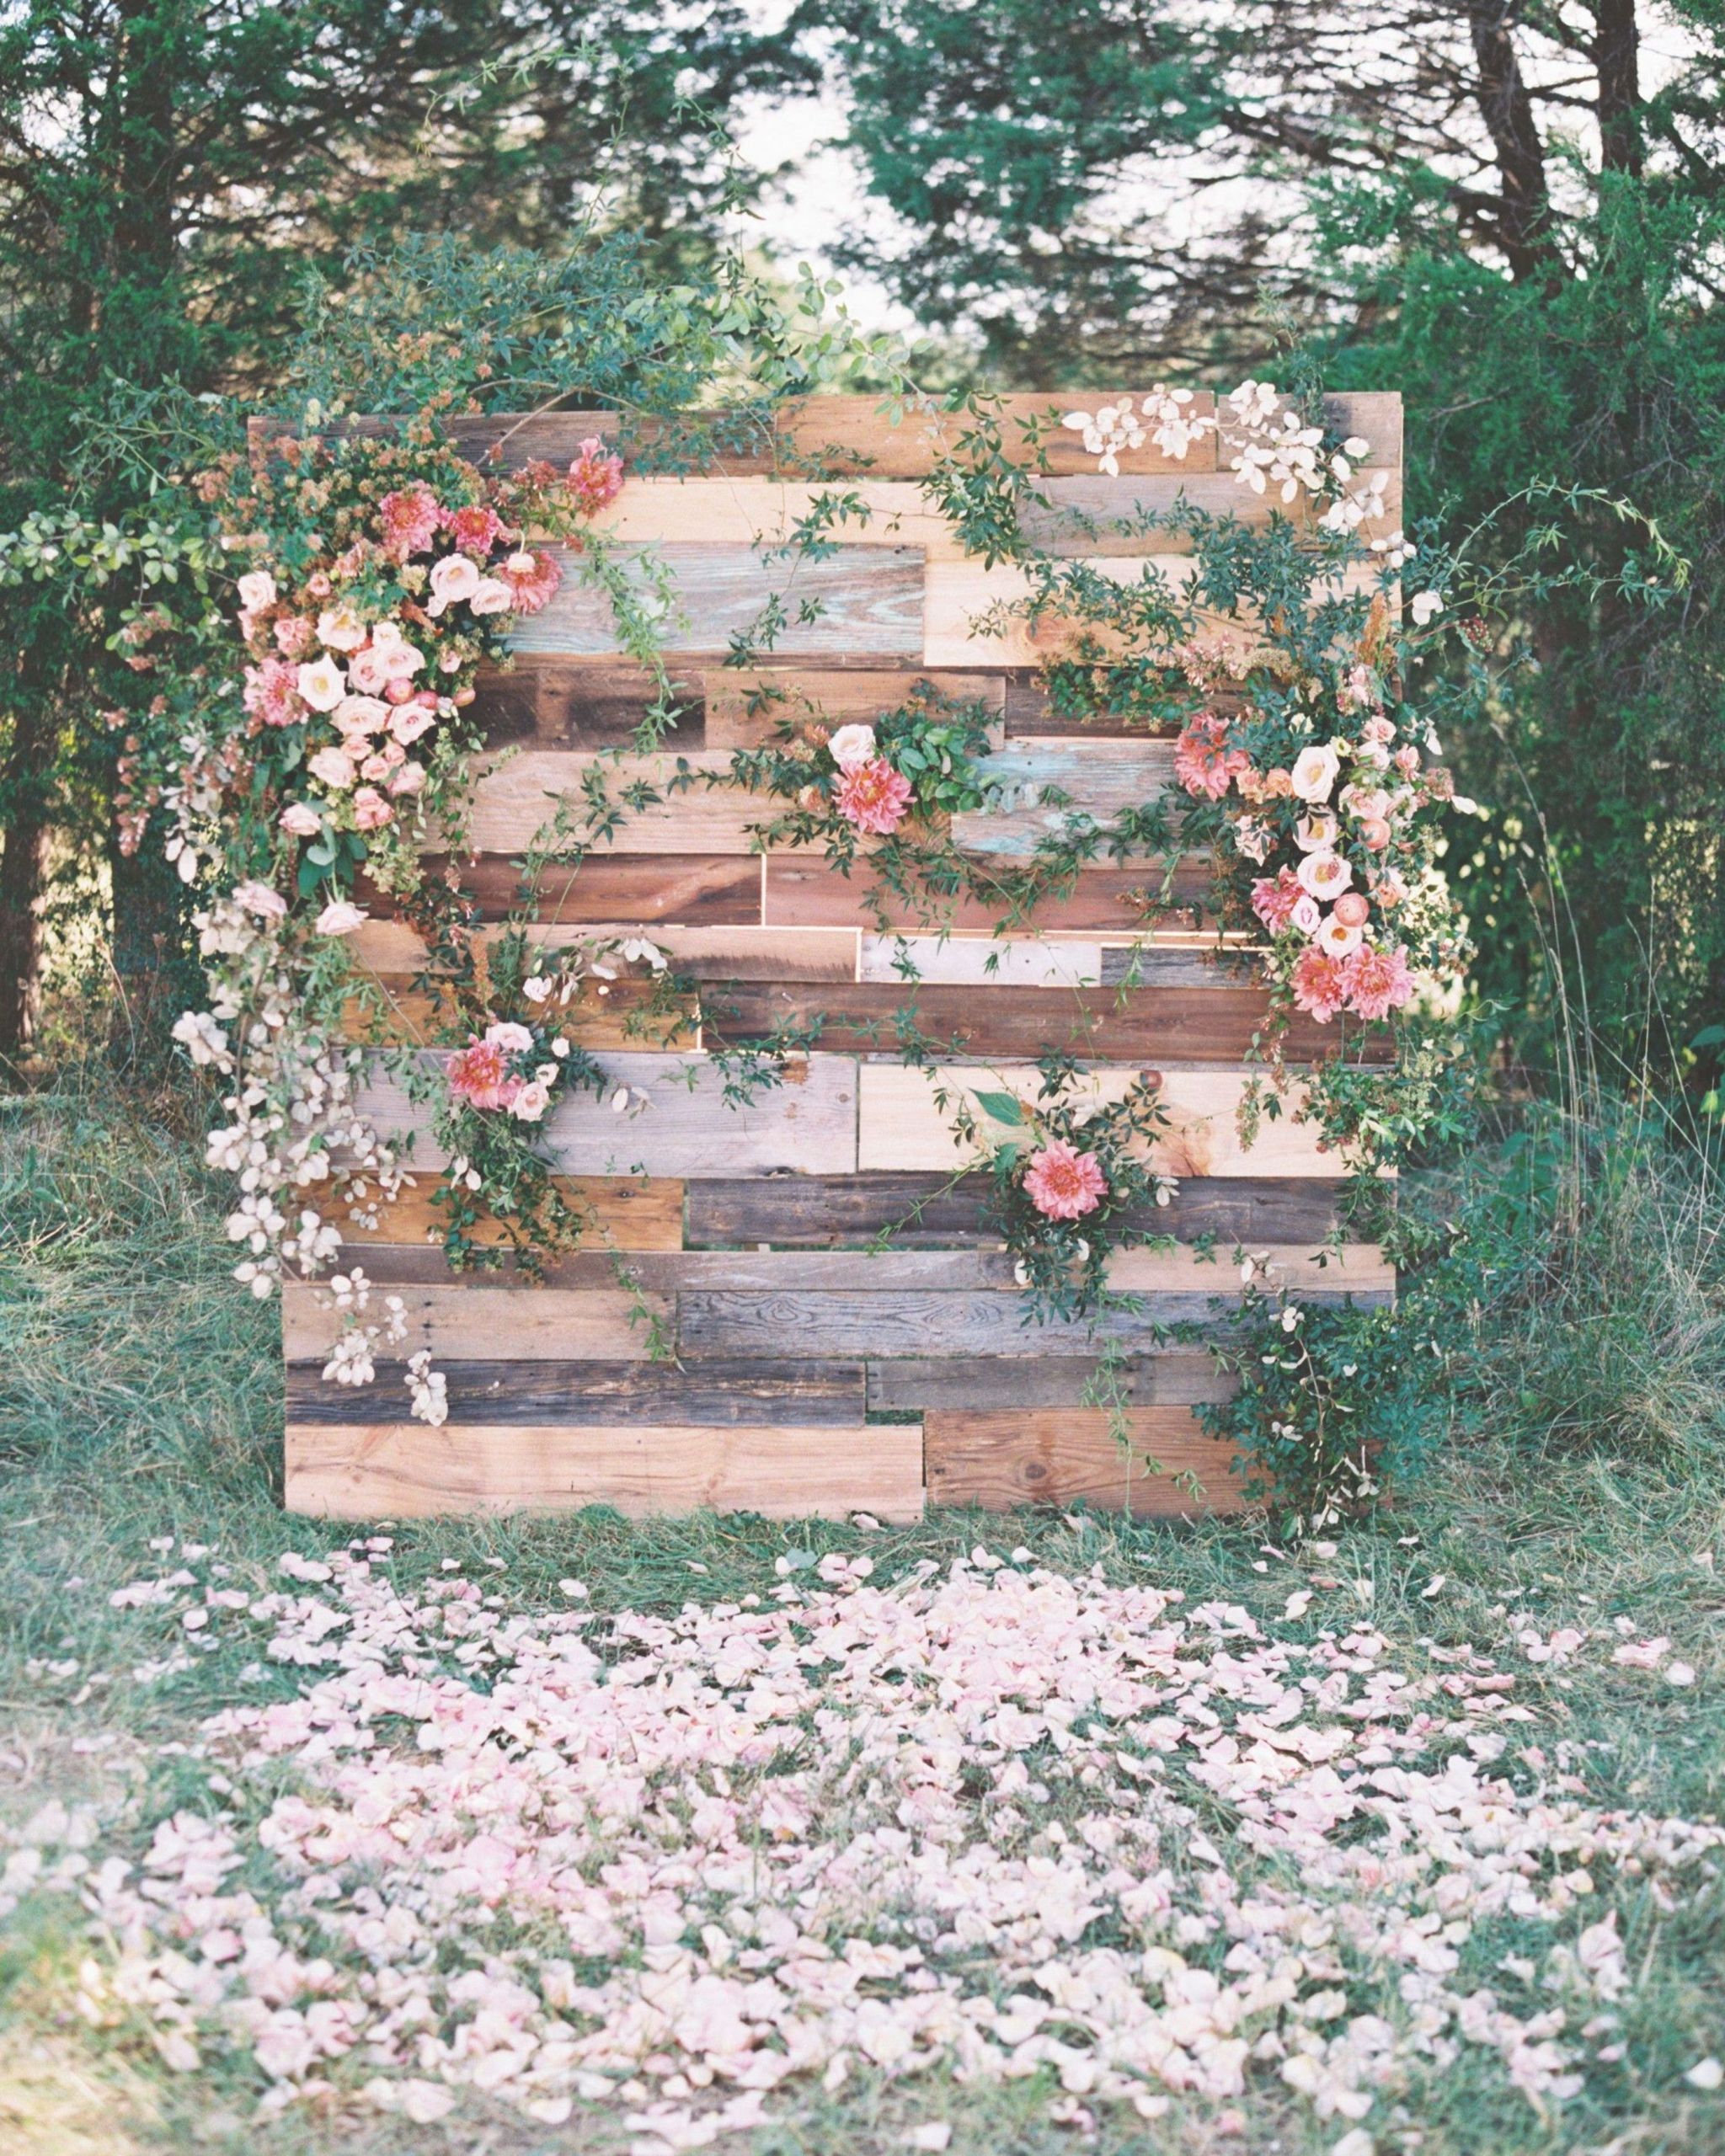 Garten Hochzeit Einzigartig 24 Beautiful Wedding Backdrop Ideas Weddinginspiration